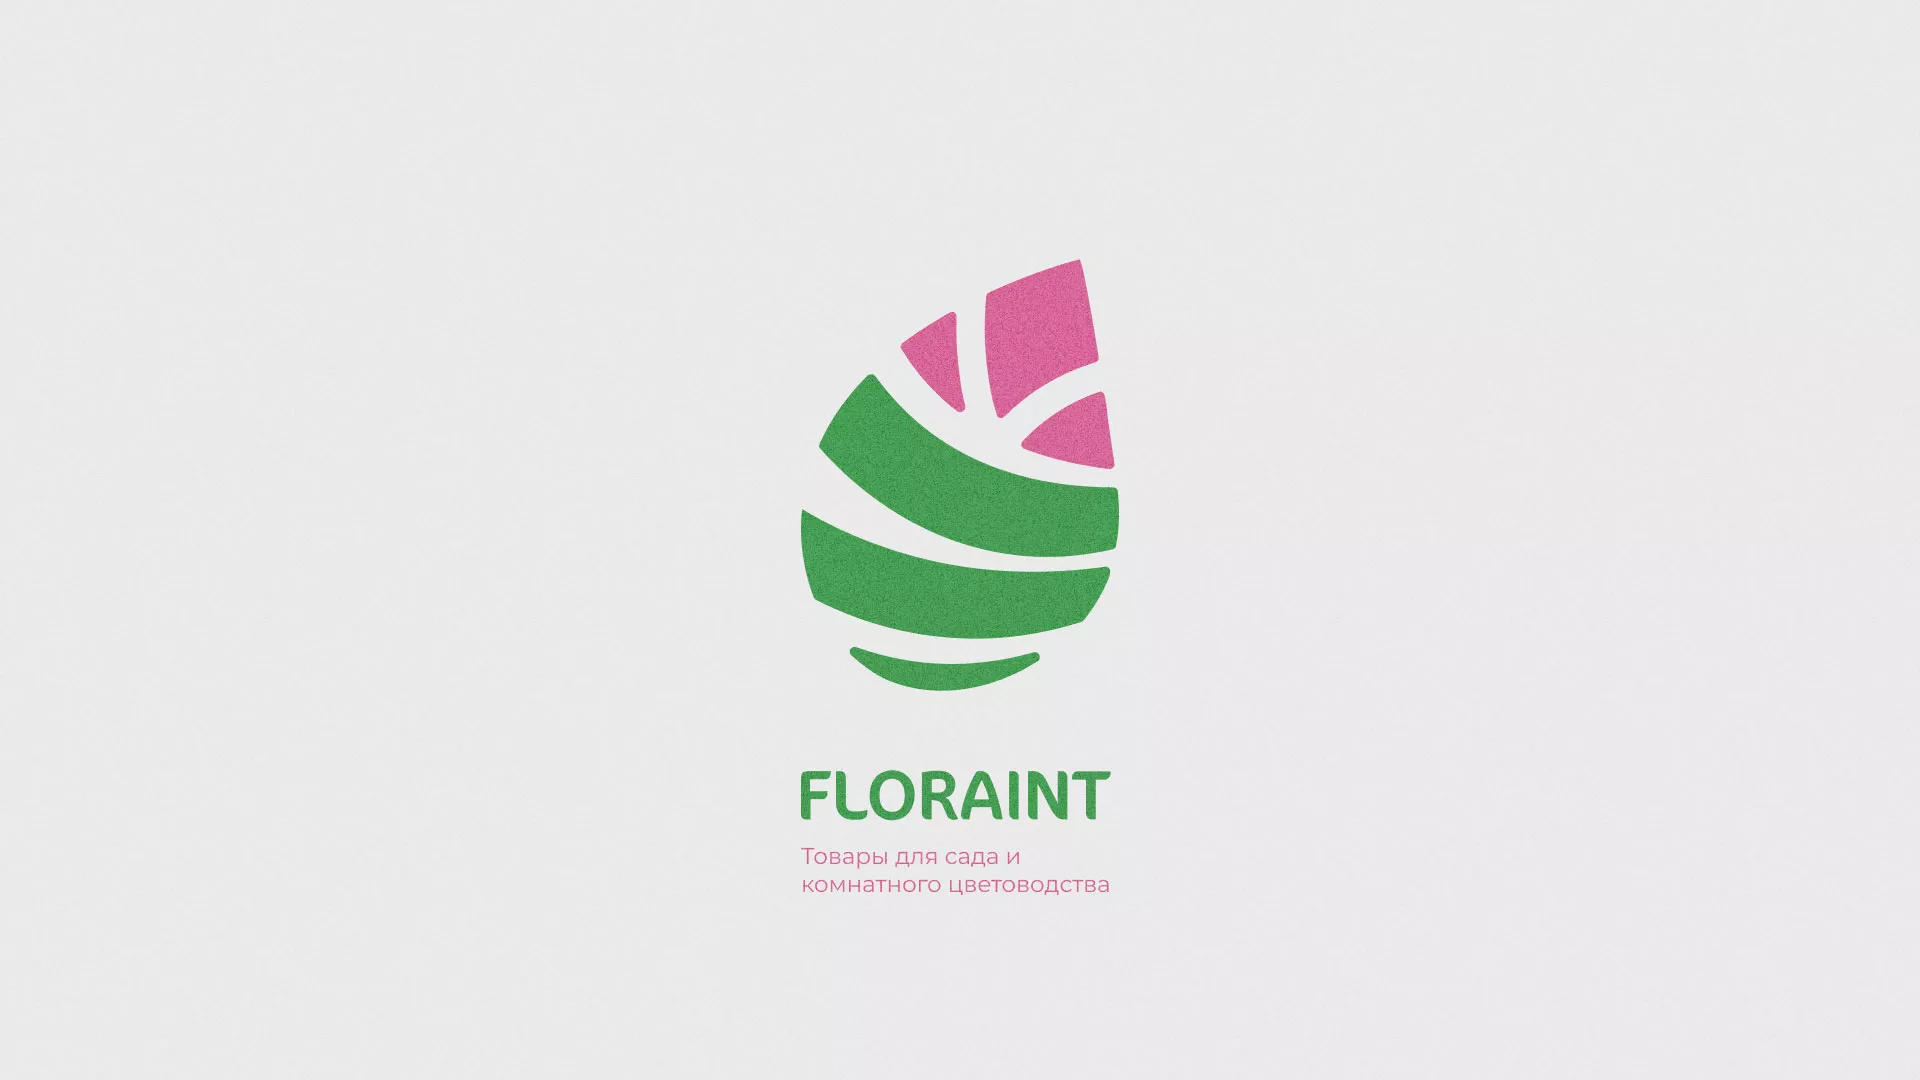 Разработка оформления профиля Instagram для магазина «Floraint» в Улане-Удэ